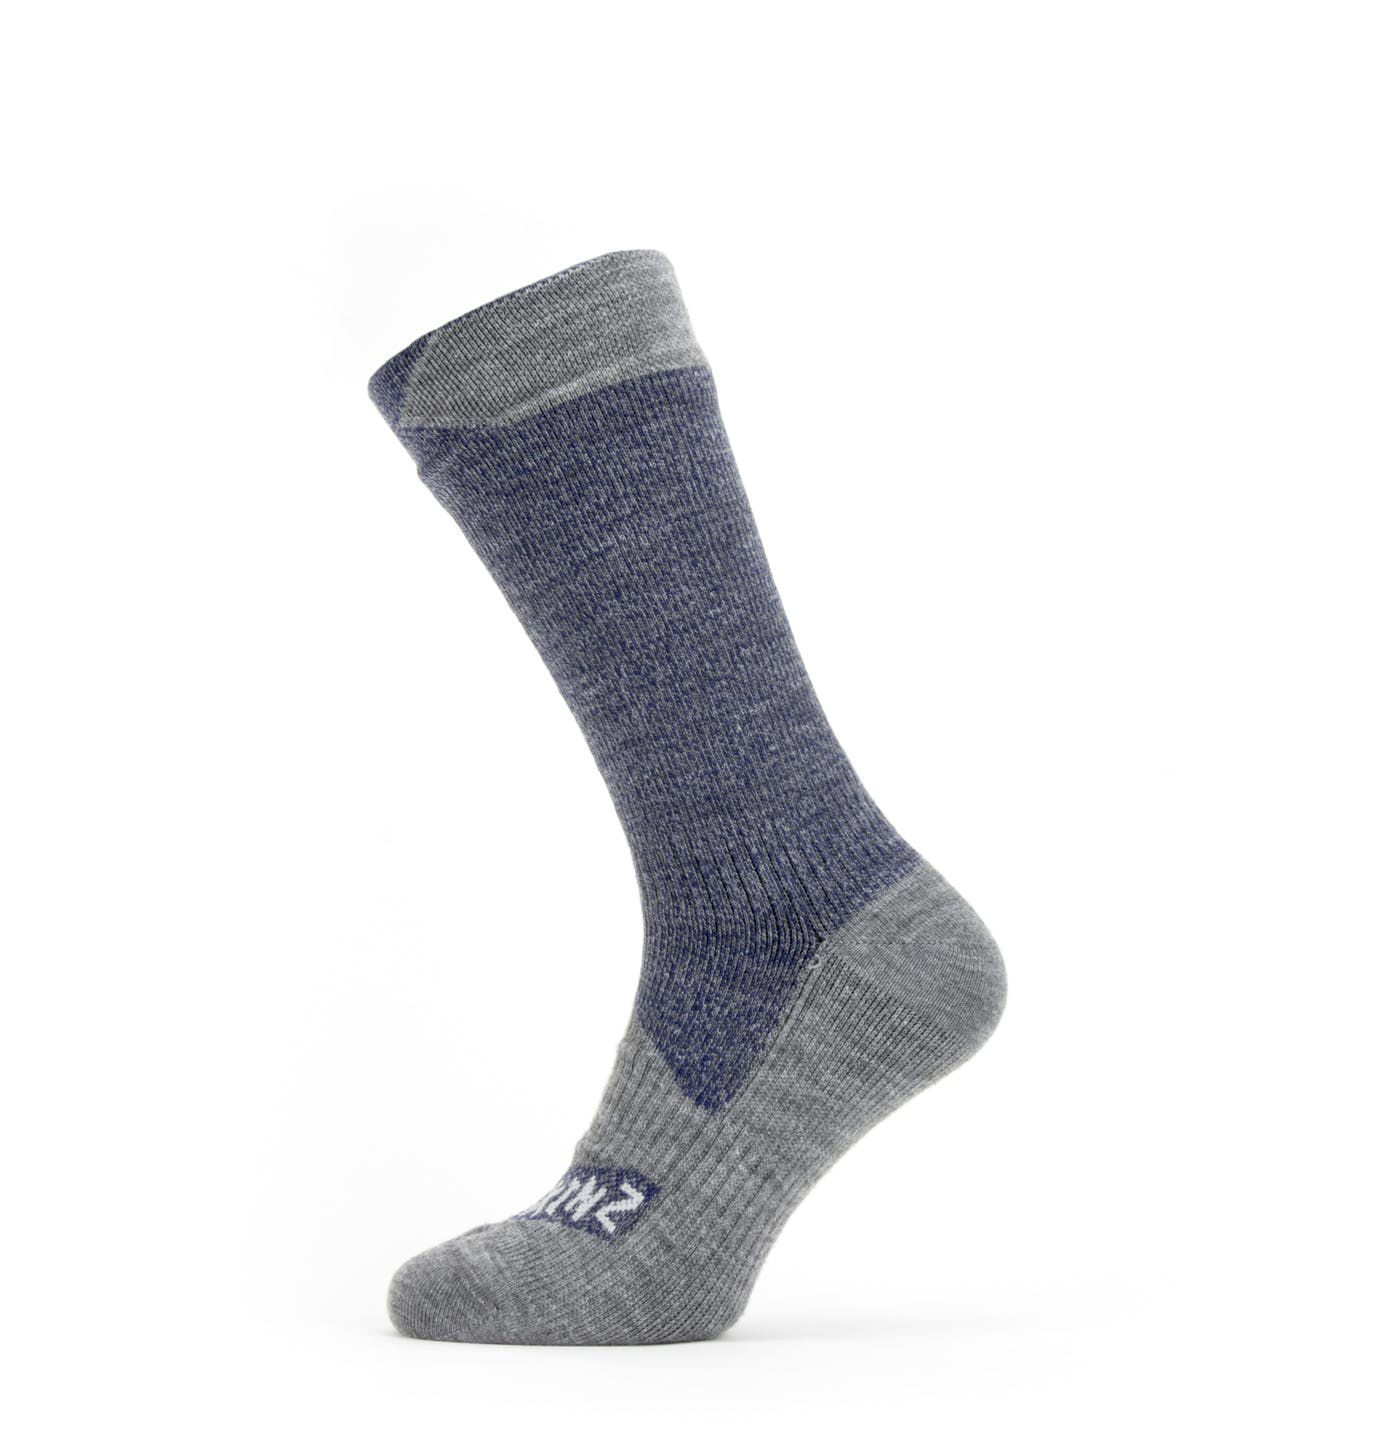 Sealskinz Waterproof All Weather Mid Sock in Navy Blue / Grey Marl